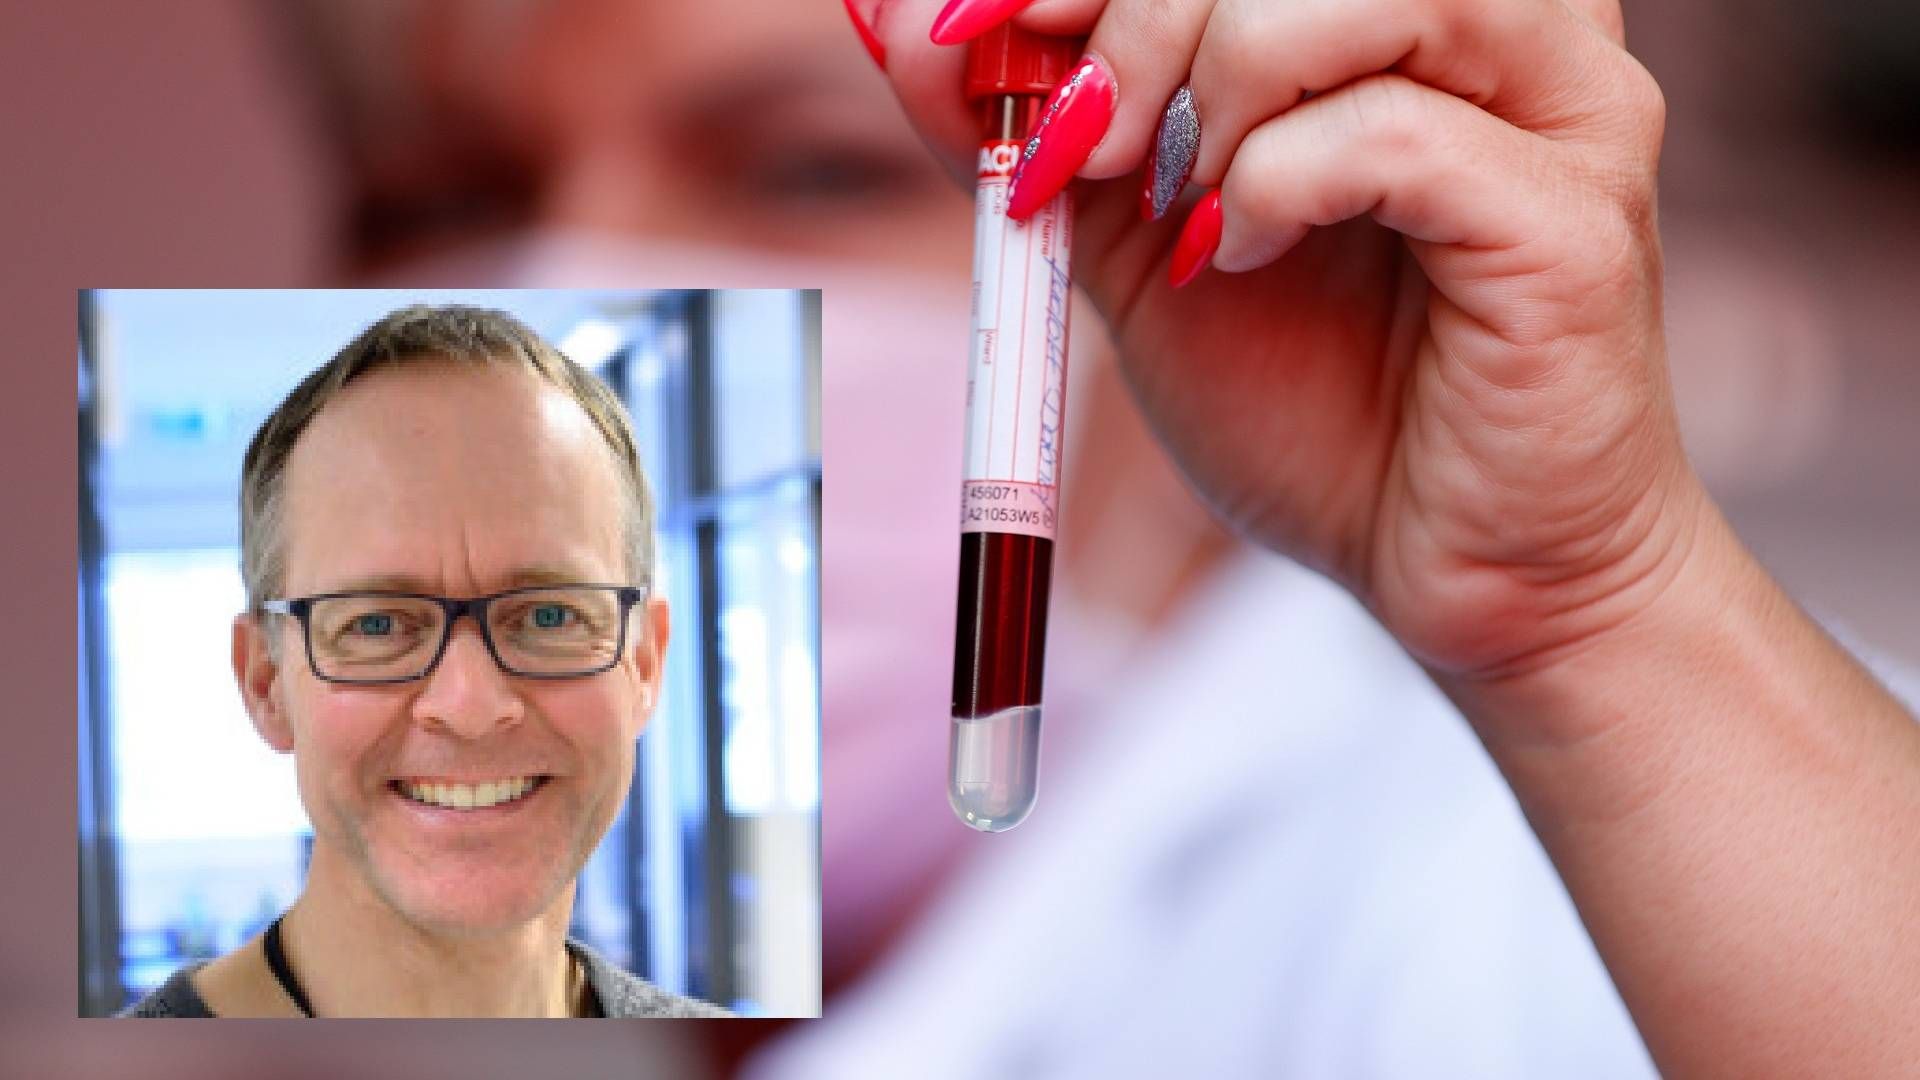 GJENNOMBRUDD: professor Oddmund Nordgård ved Stavanger universitetssjukehus forteller at de har hatt et gjennombrudd i måling av kreft-DNA i blodet til pasienter. | Foto: AP Photo/Laszlo Balogh og Universitetet i Stavanger